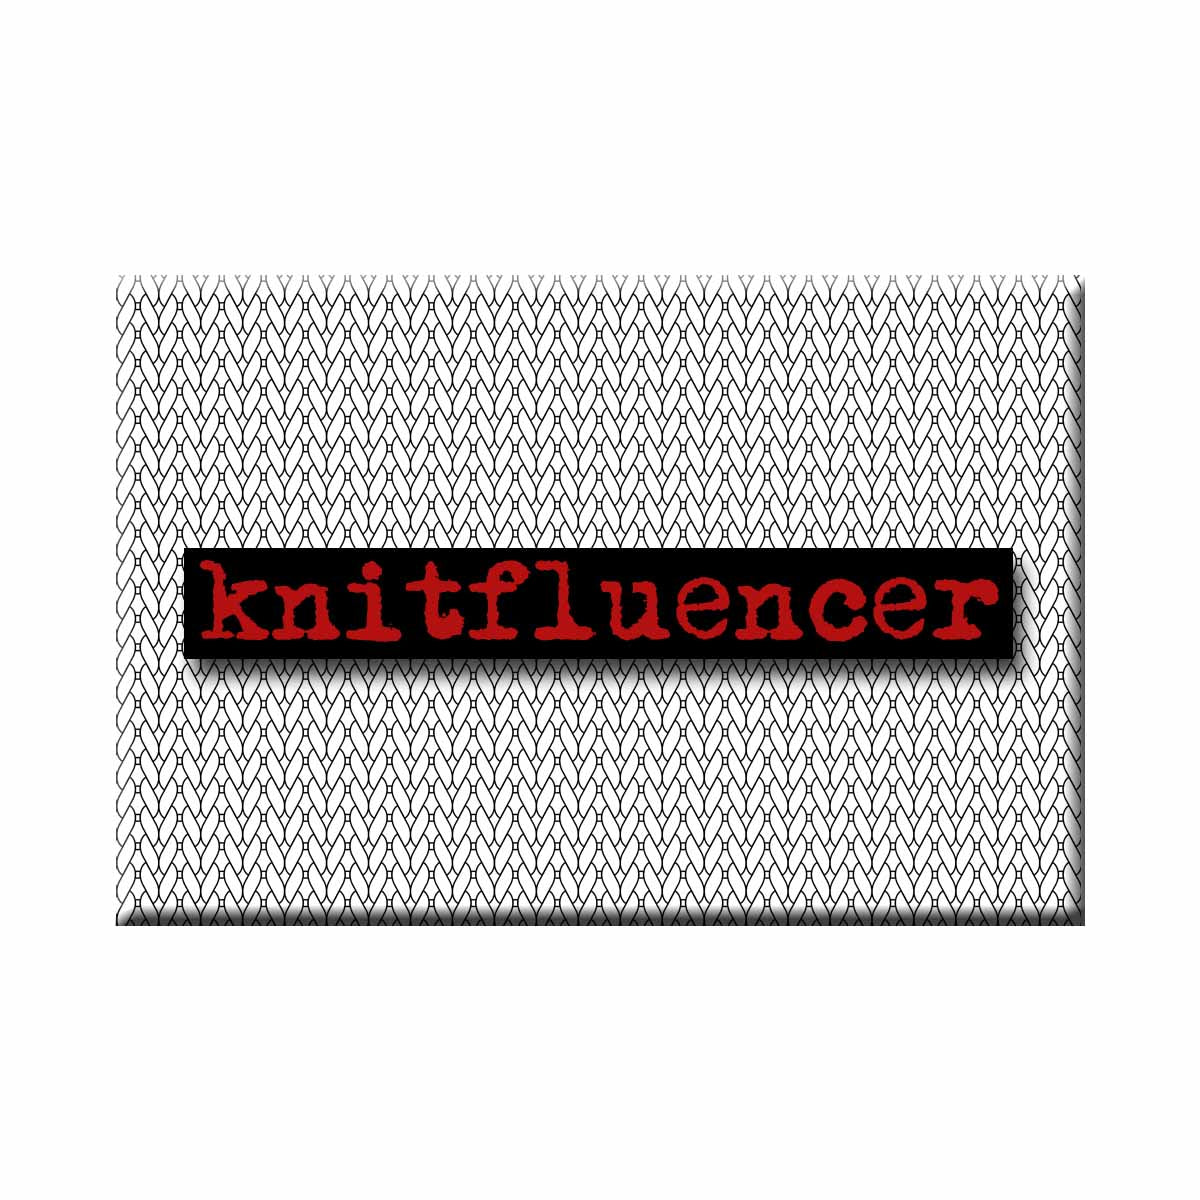 Knitfluencer Refrigerator Magnet (RM989)